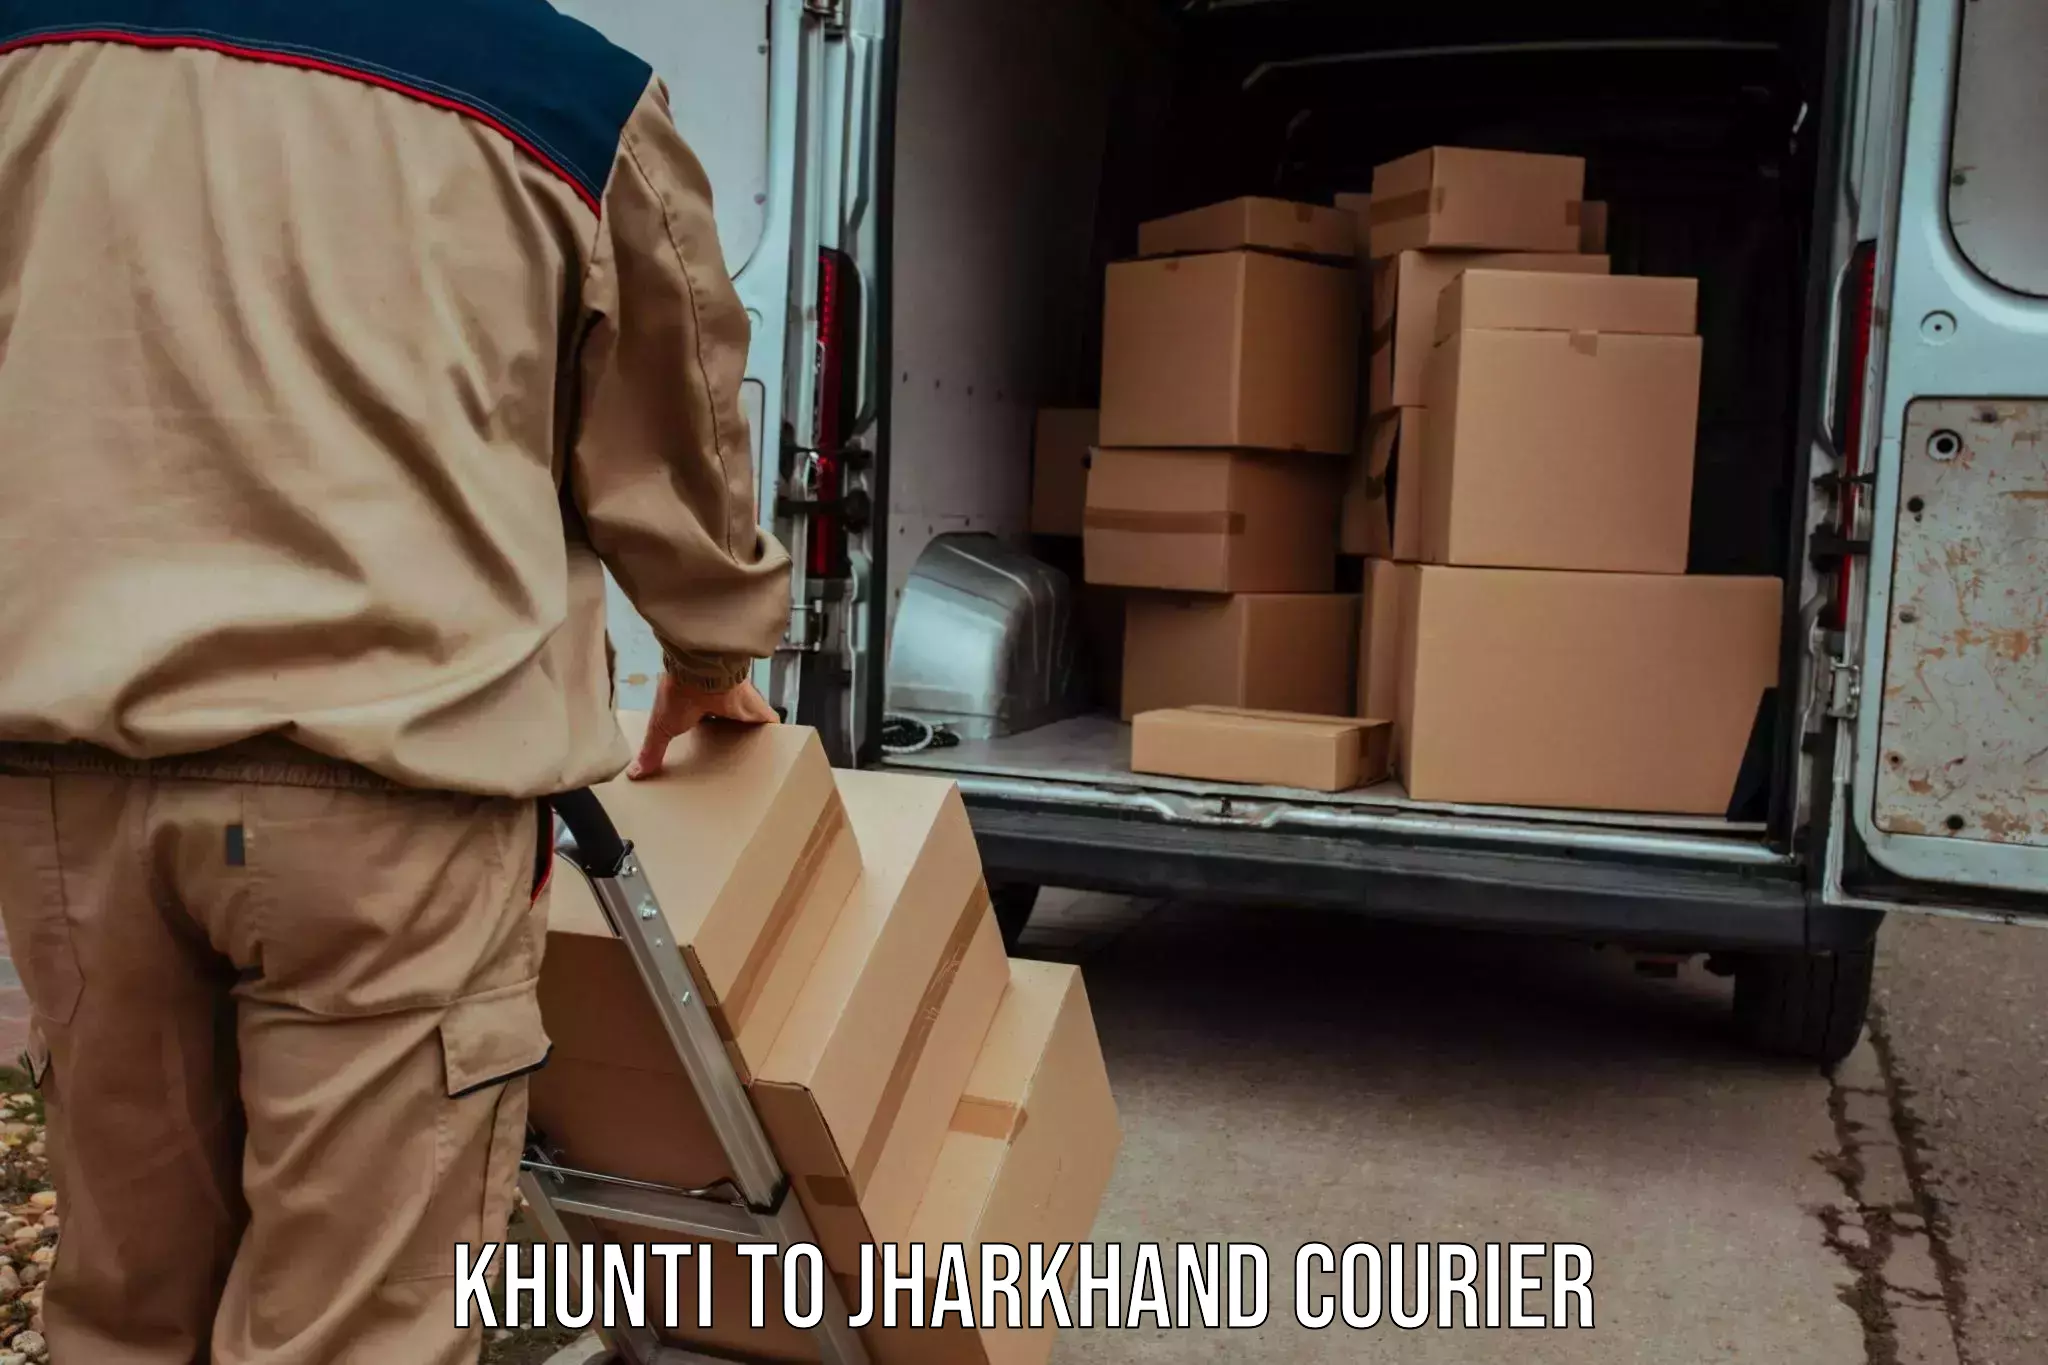 Express logistics service Khunti to Musabani